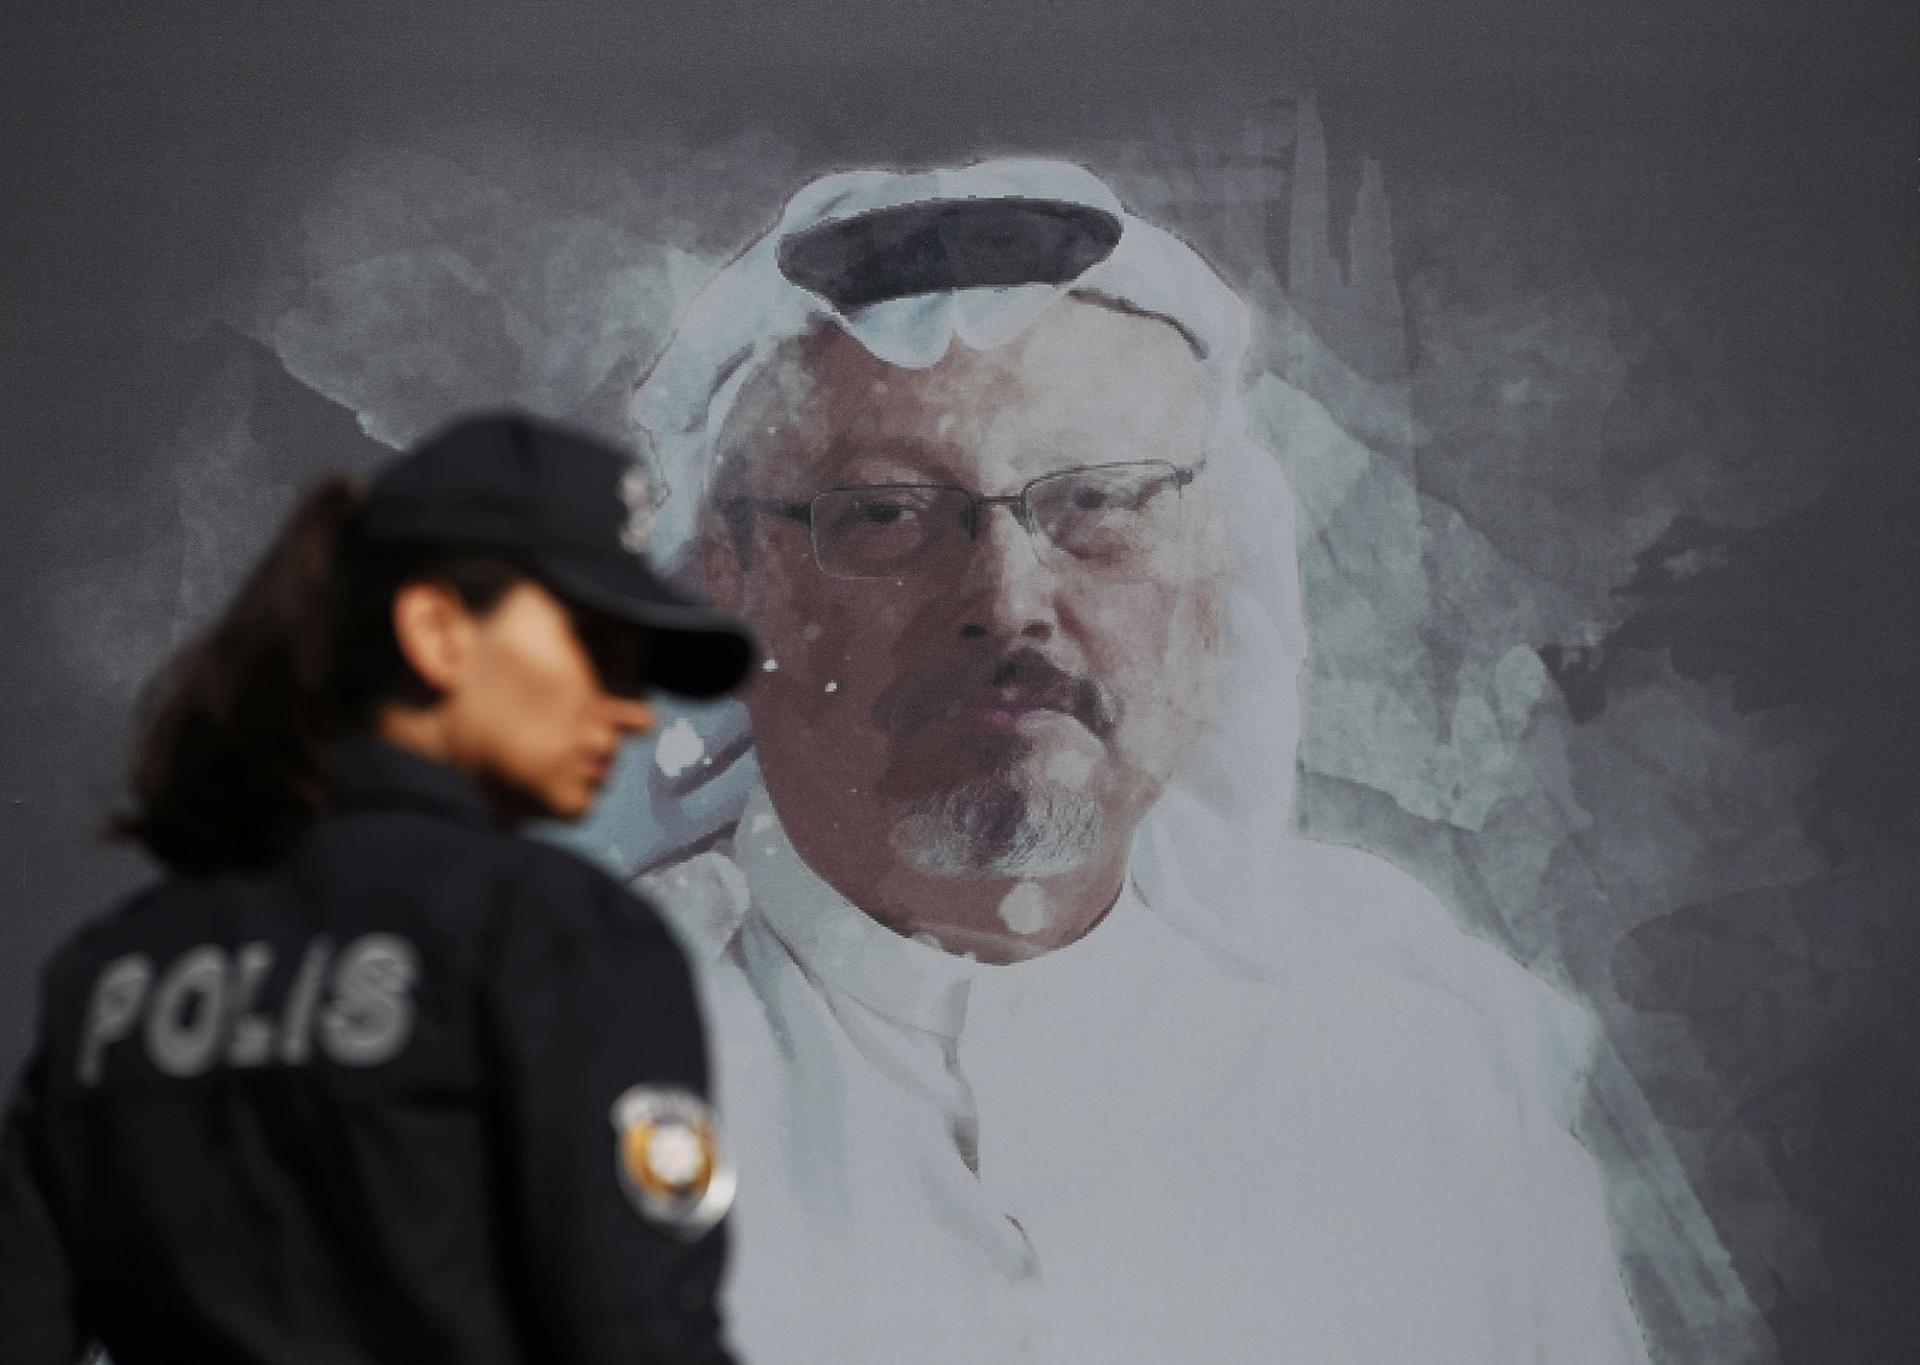 التوتر ظل يتصاعد بين السعودية وتركيا منذ مقتل خاشقجي قبل سنتين